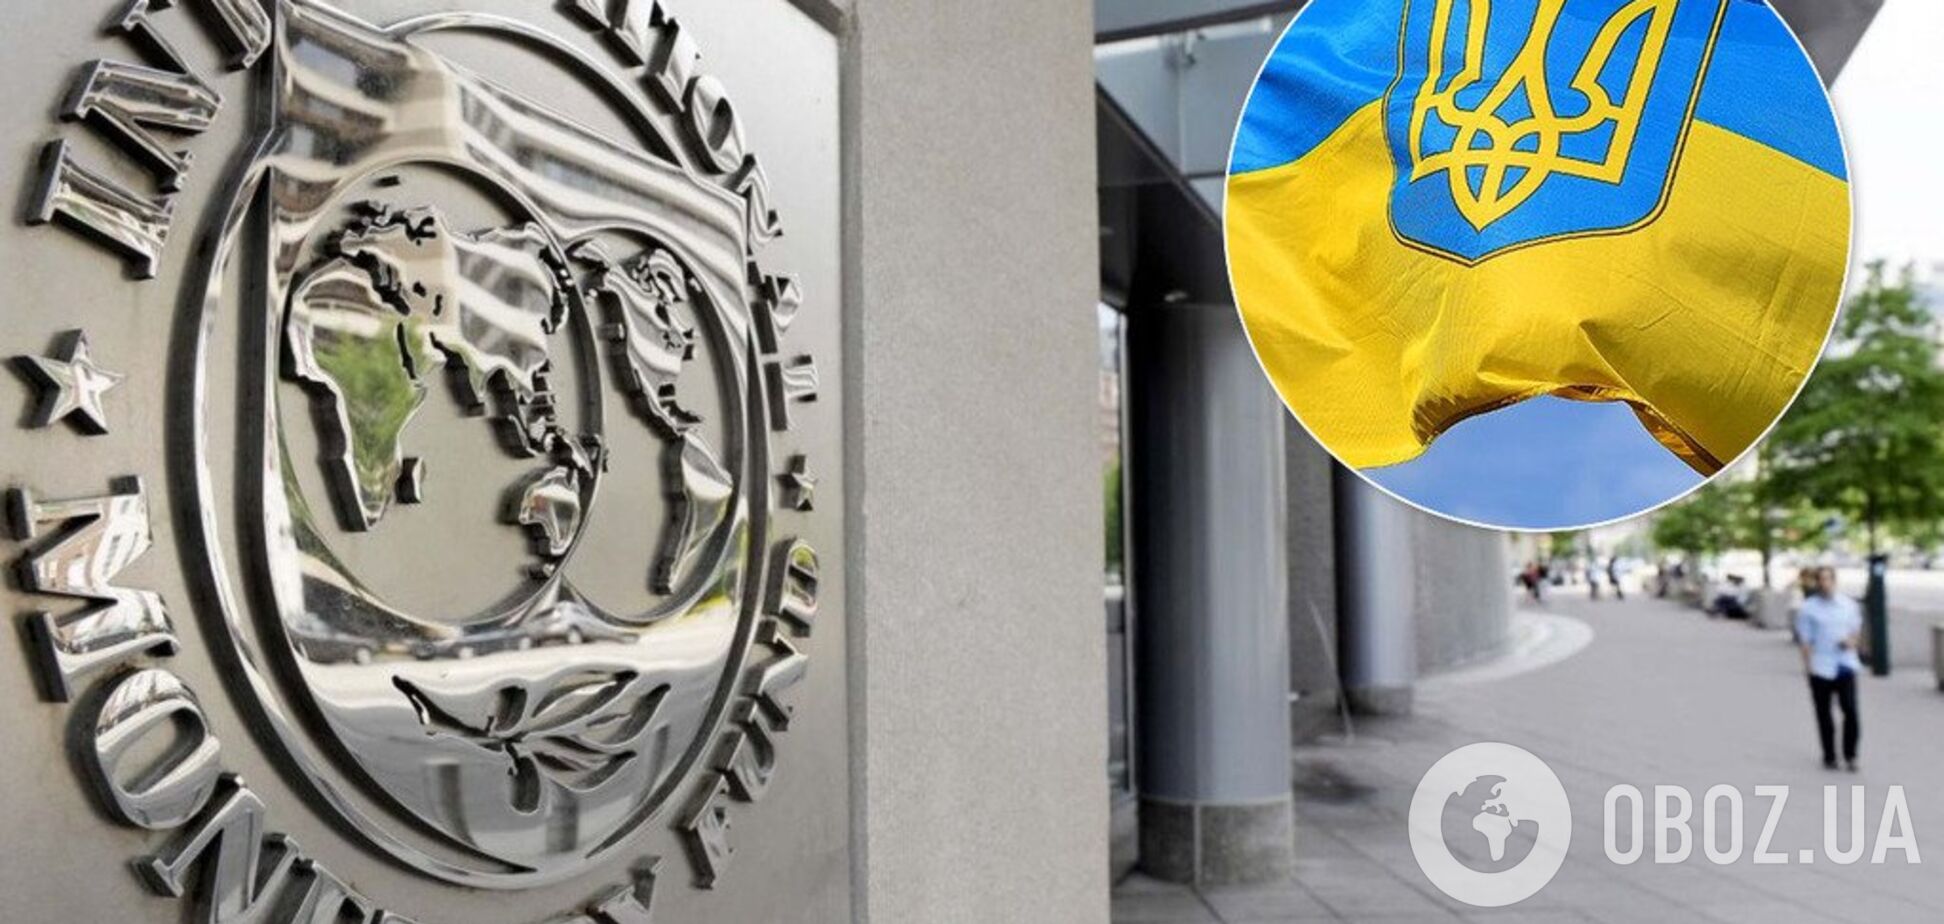 Новые цены на газ и ликвидация банков: СМИ раскрыли, что требует МВФ от Украины